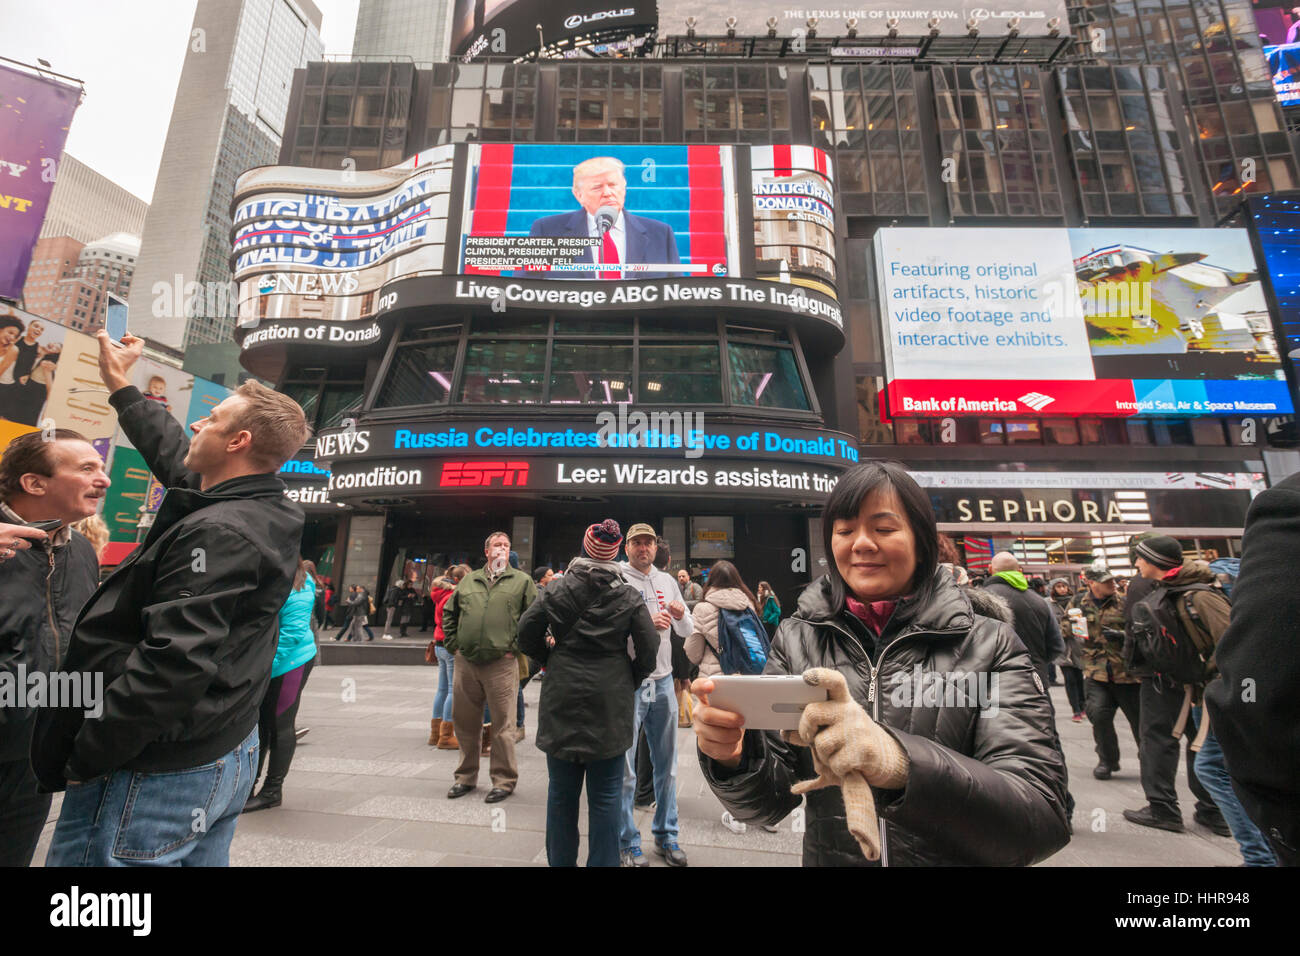 New York, USA. 20 Jan, 2017. Les visiteurs de Times Square à New York voir l'inauguration de l'atout de Donald comme le 45e président des États-Unis sur l'écran géant de télévision ABC le vendredi 20 janvier 2017. Crédit : Richard Levine/Alamy Live News Banque D'Images